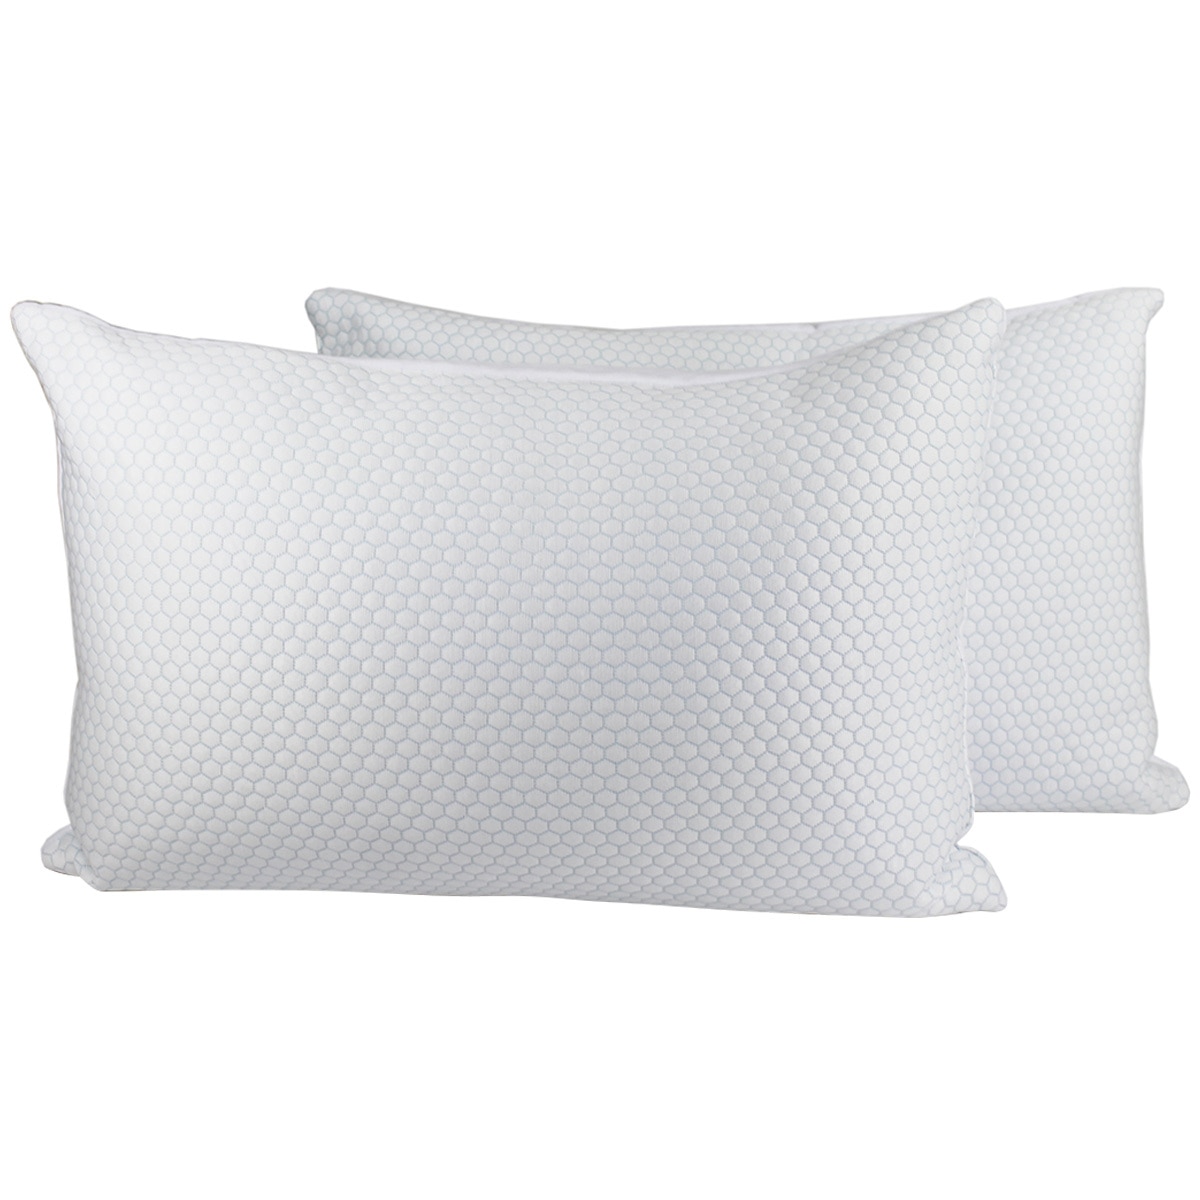 Gracious Living Cluster Memory Foam Pillow 2 Pack